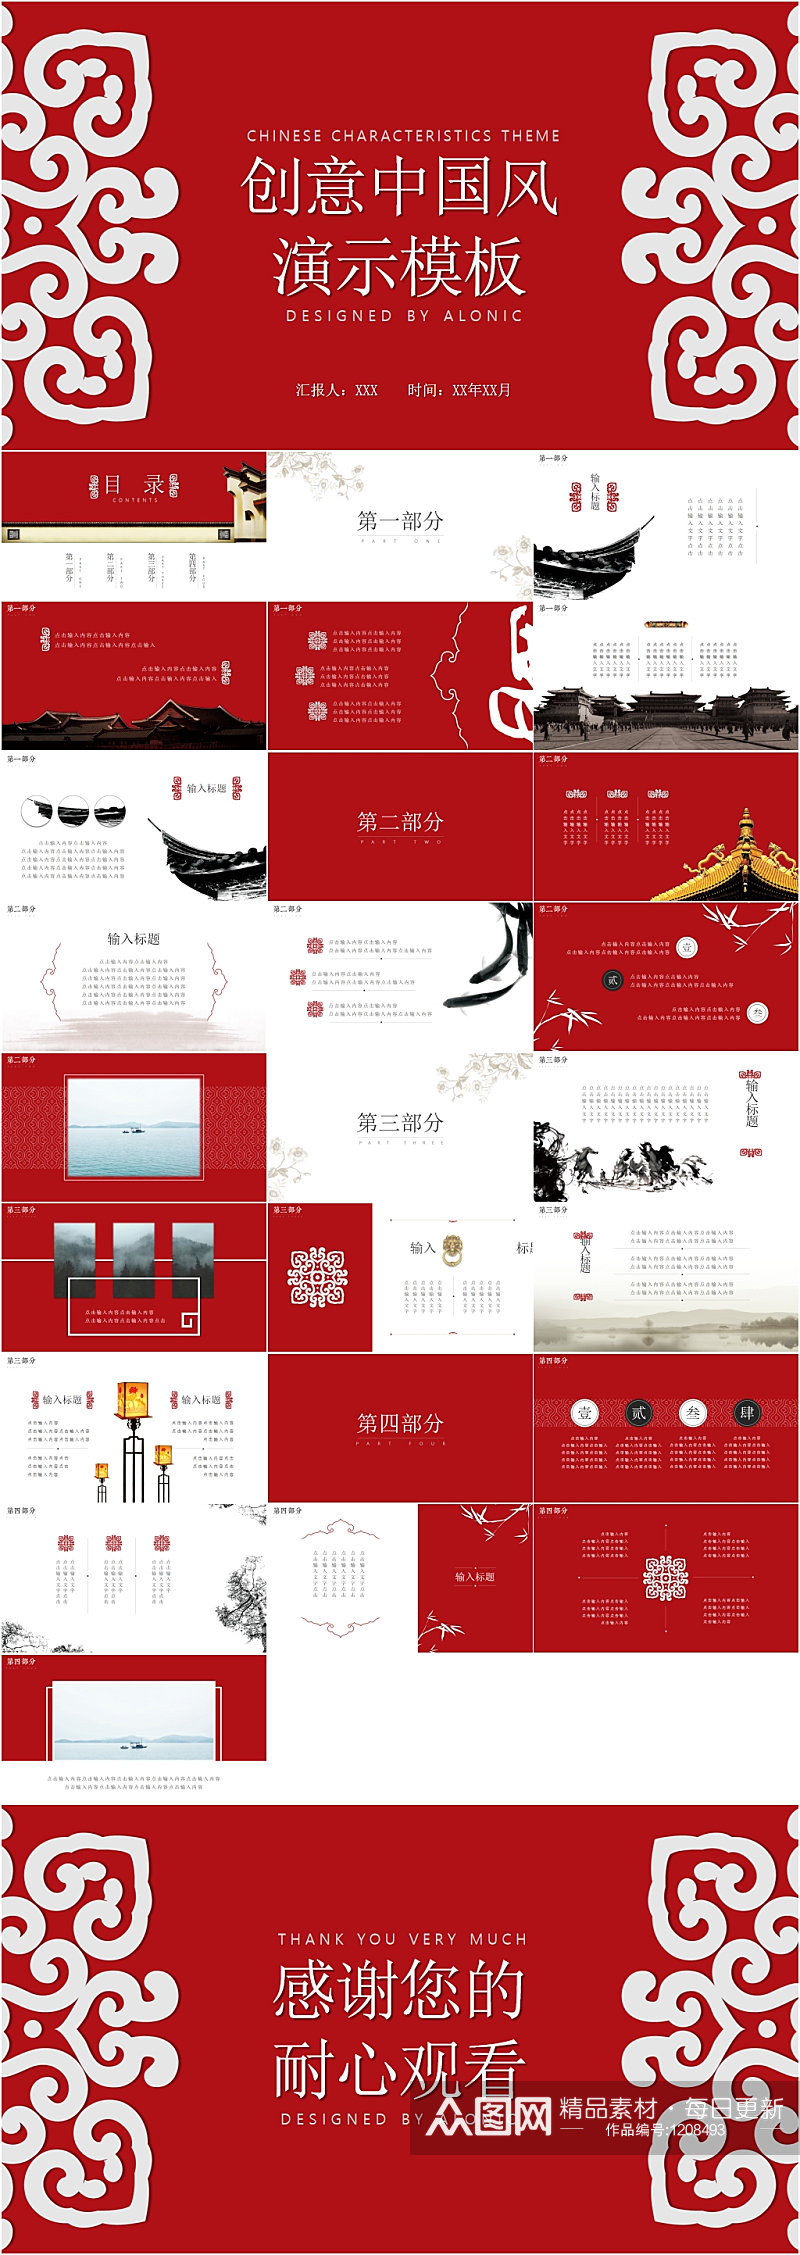 创意中国风红色大气PPT模板素材